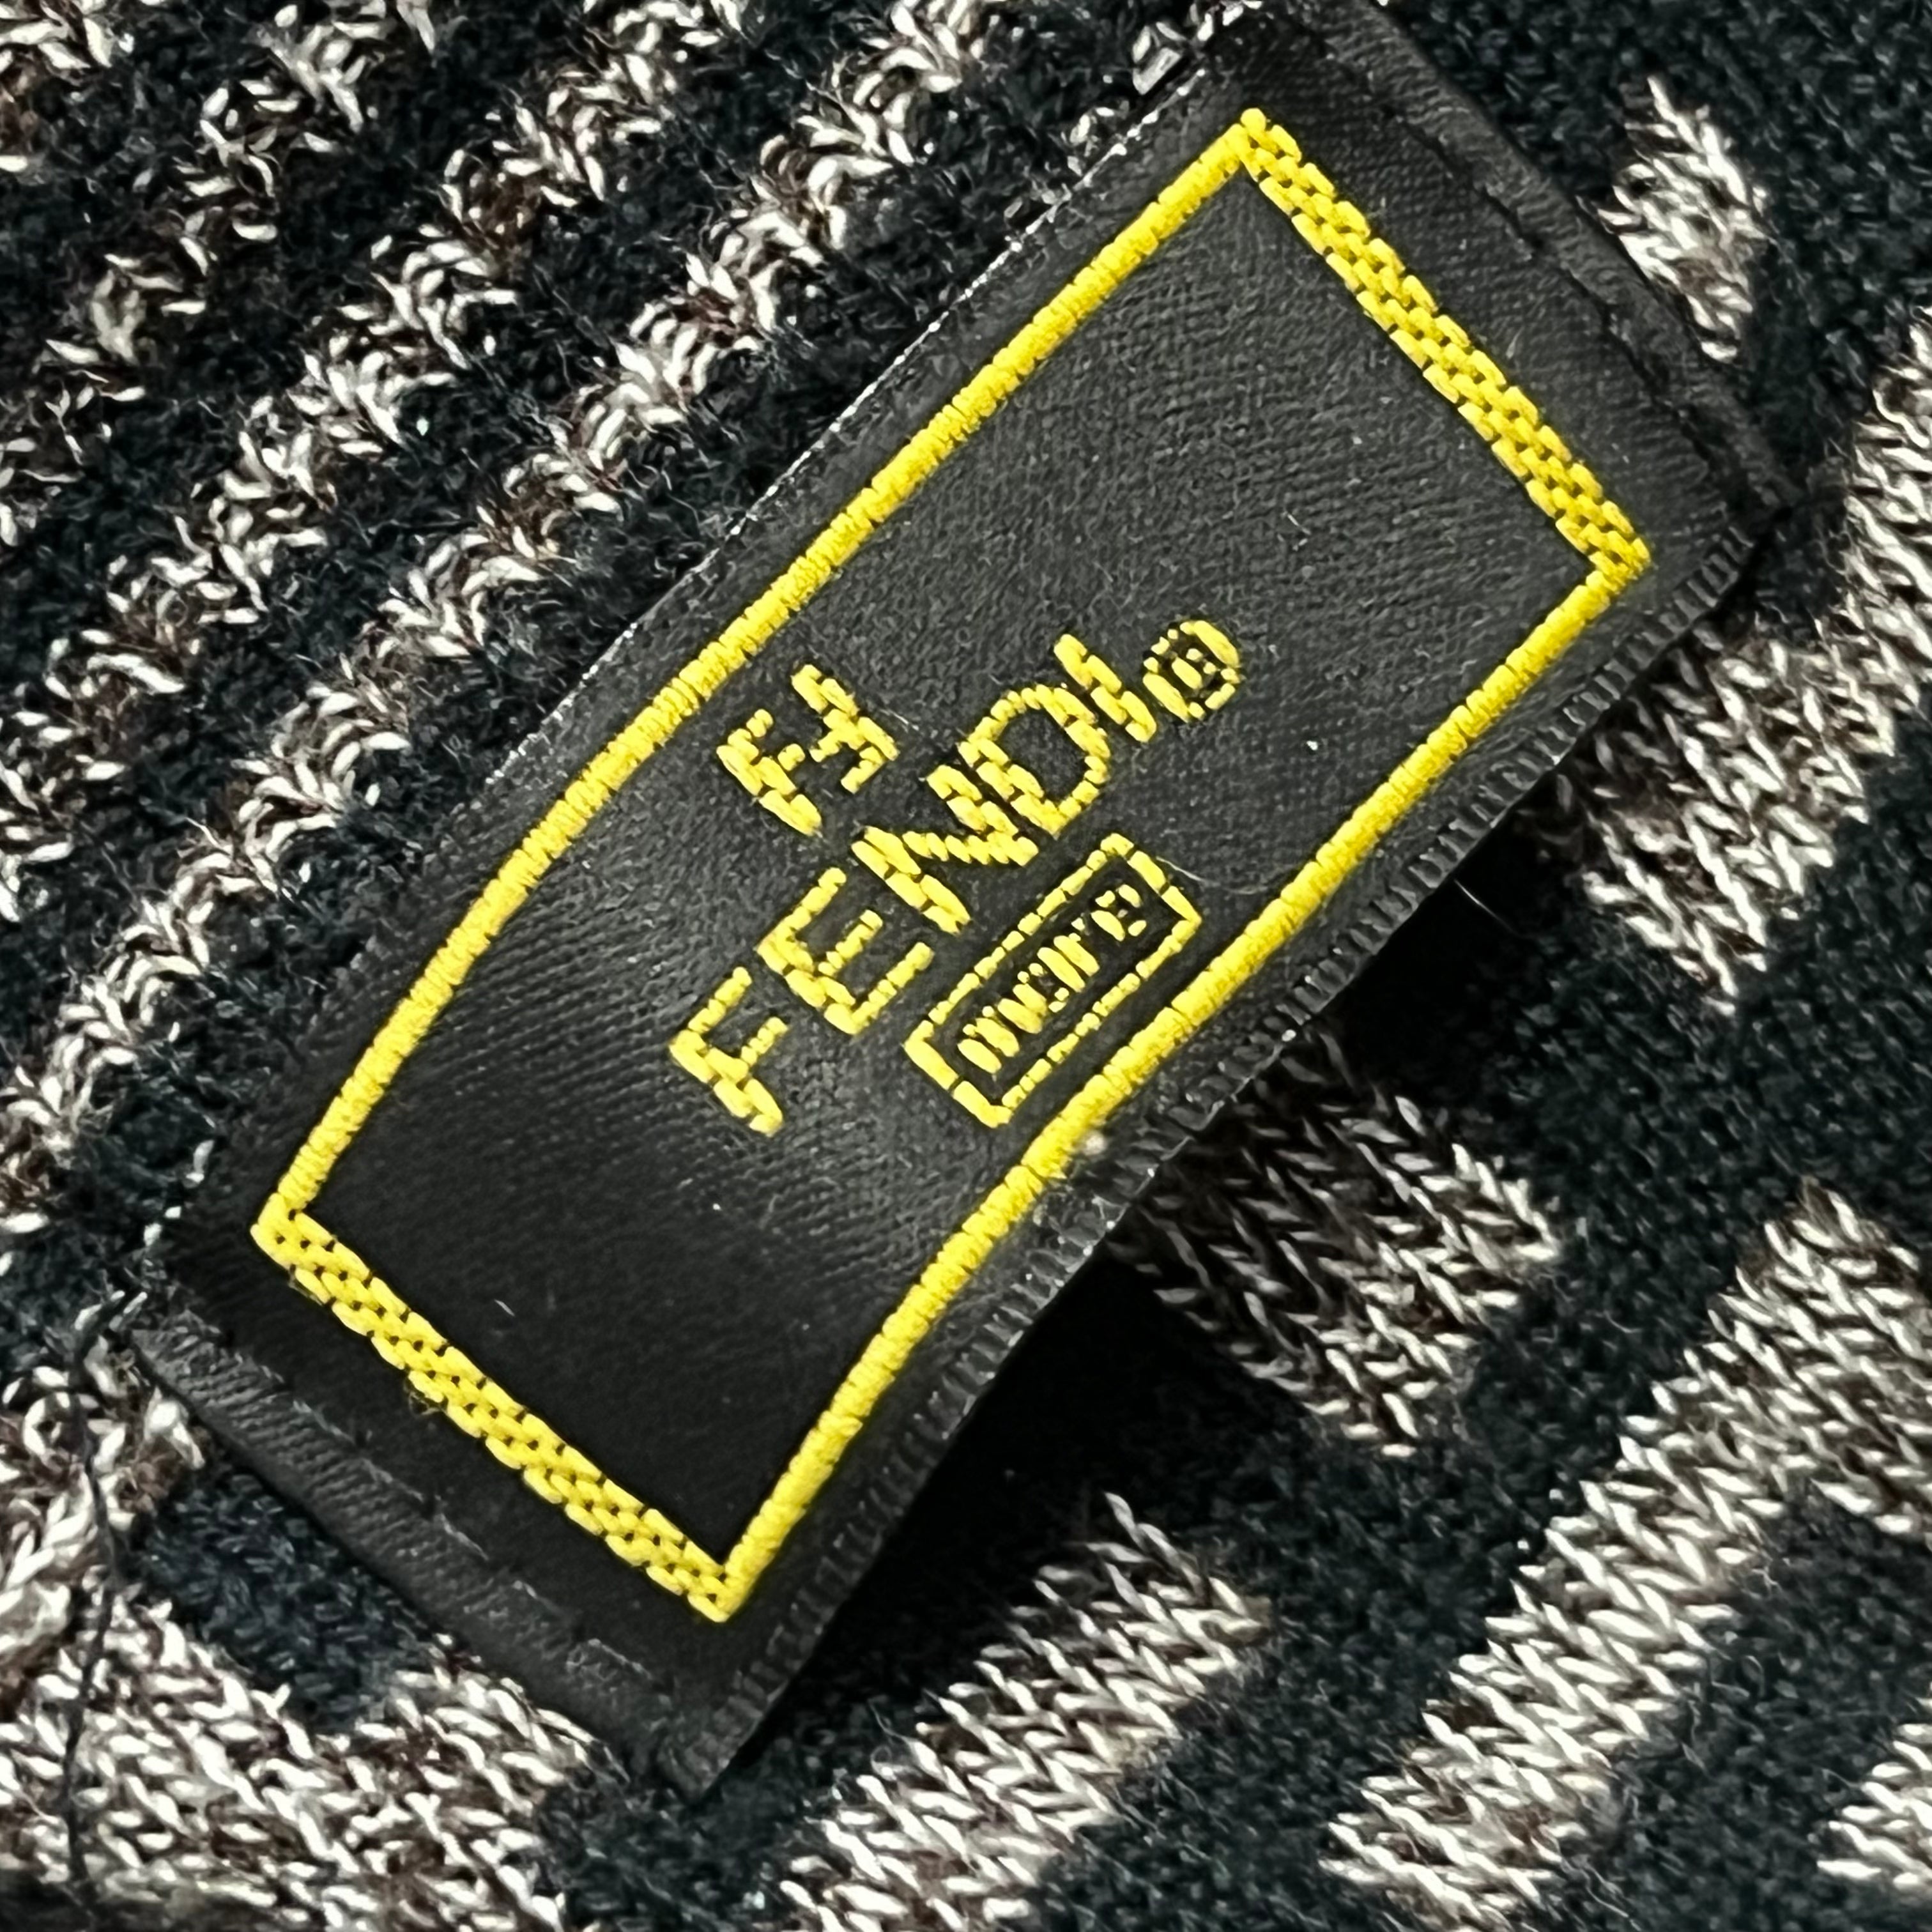 Brown/Black Monogram Long Sleeve Sweater